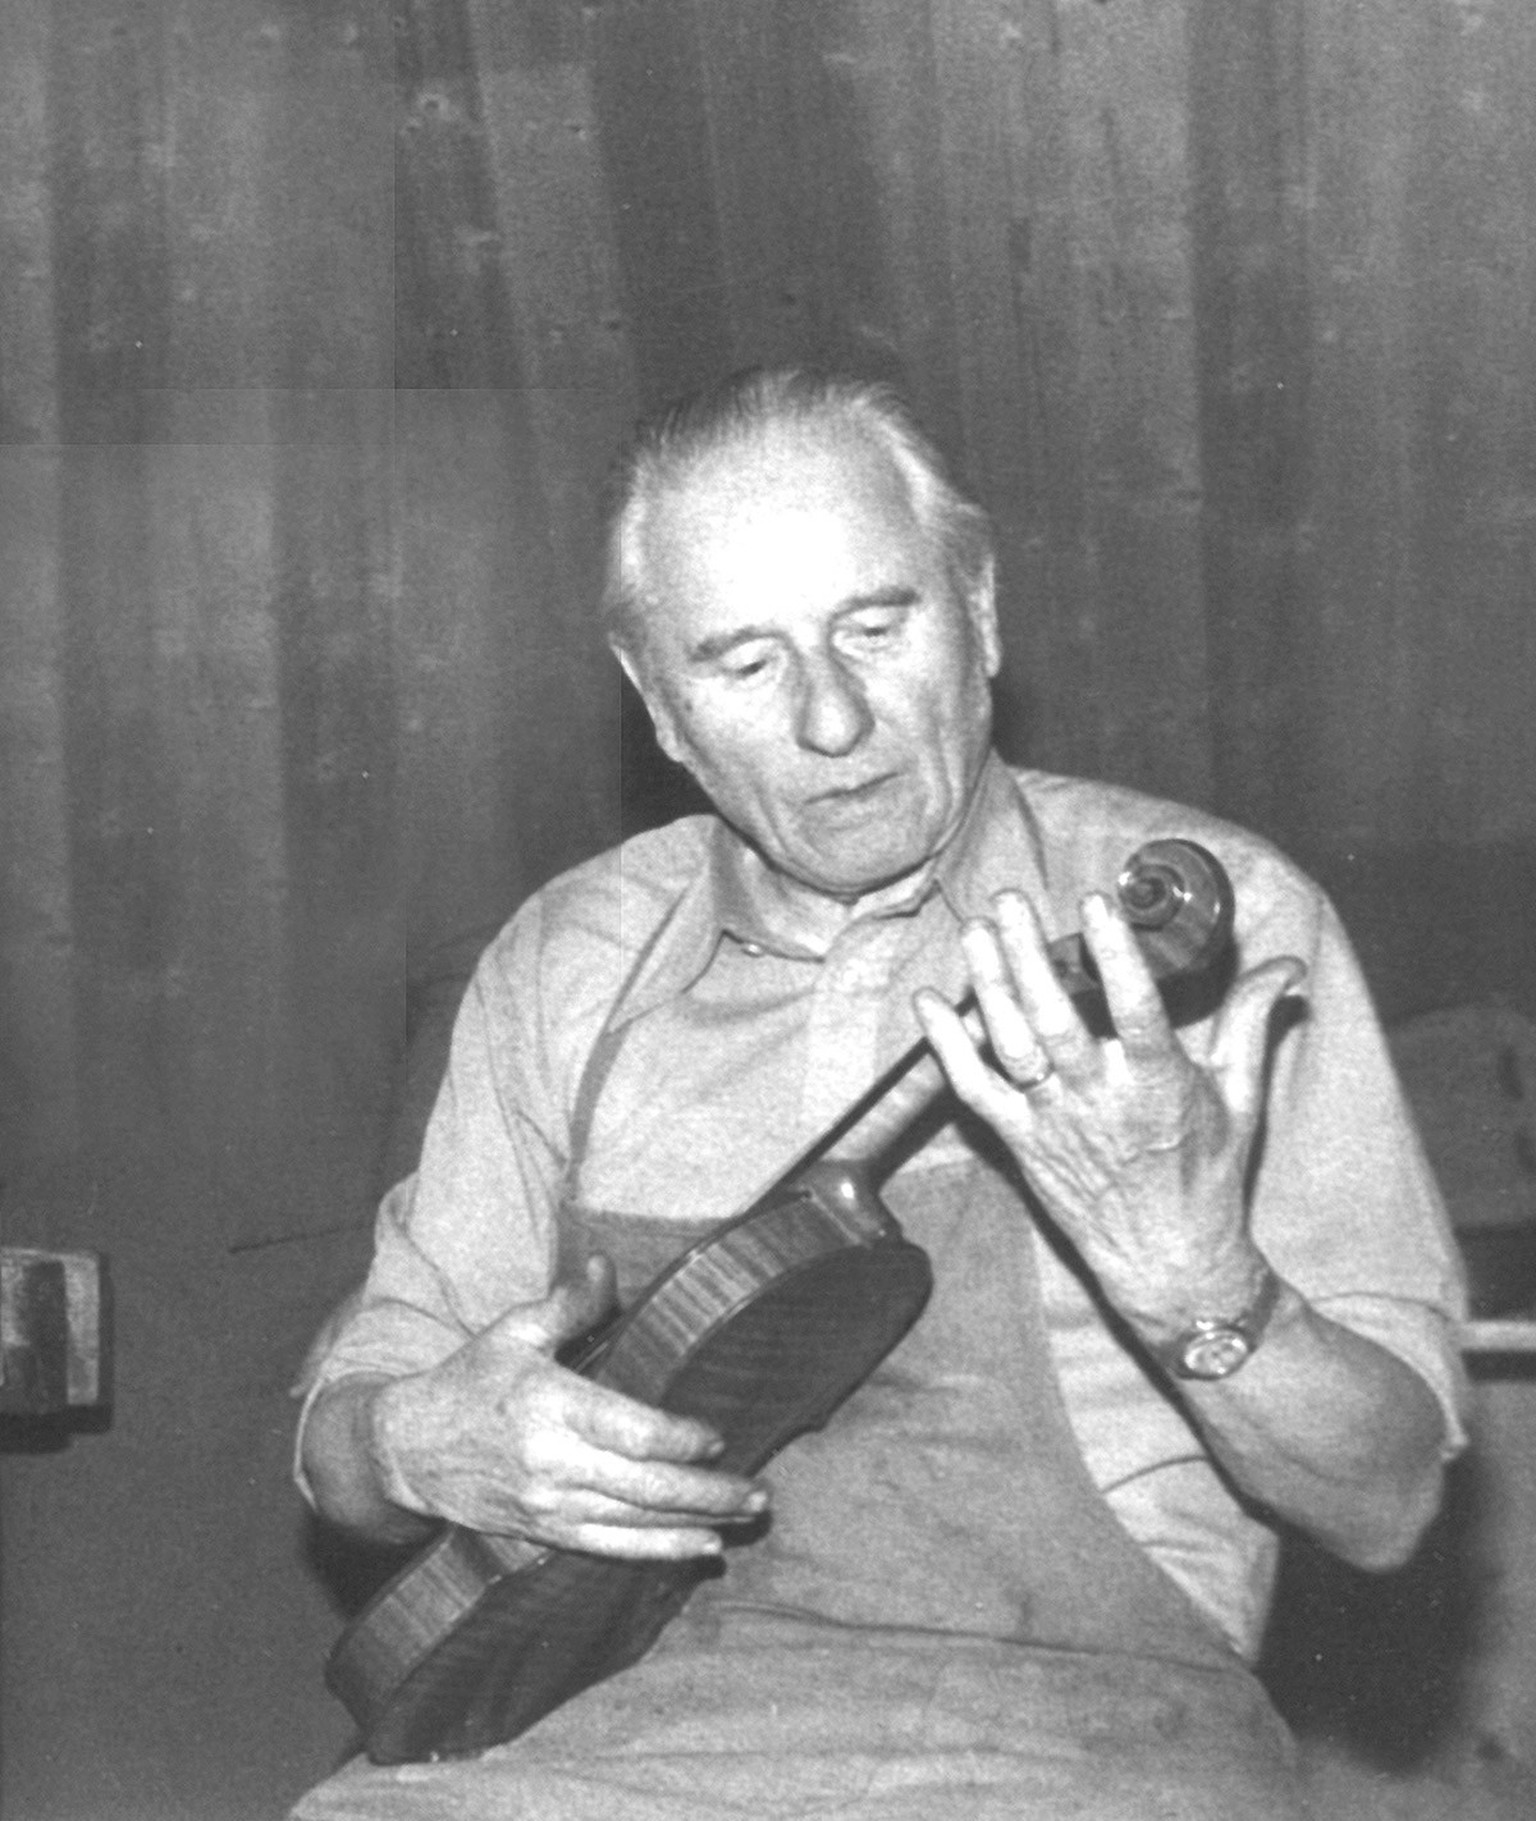 Am Ende seines Arbeitslebens kehrte Karl Schneider zurück zum Geigenbau. Foto von 1977.
https://www.riogitarren.ch/